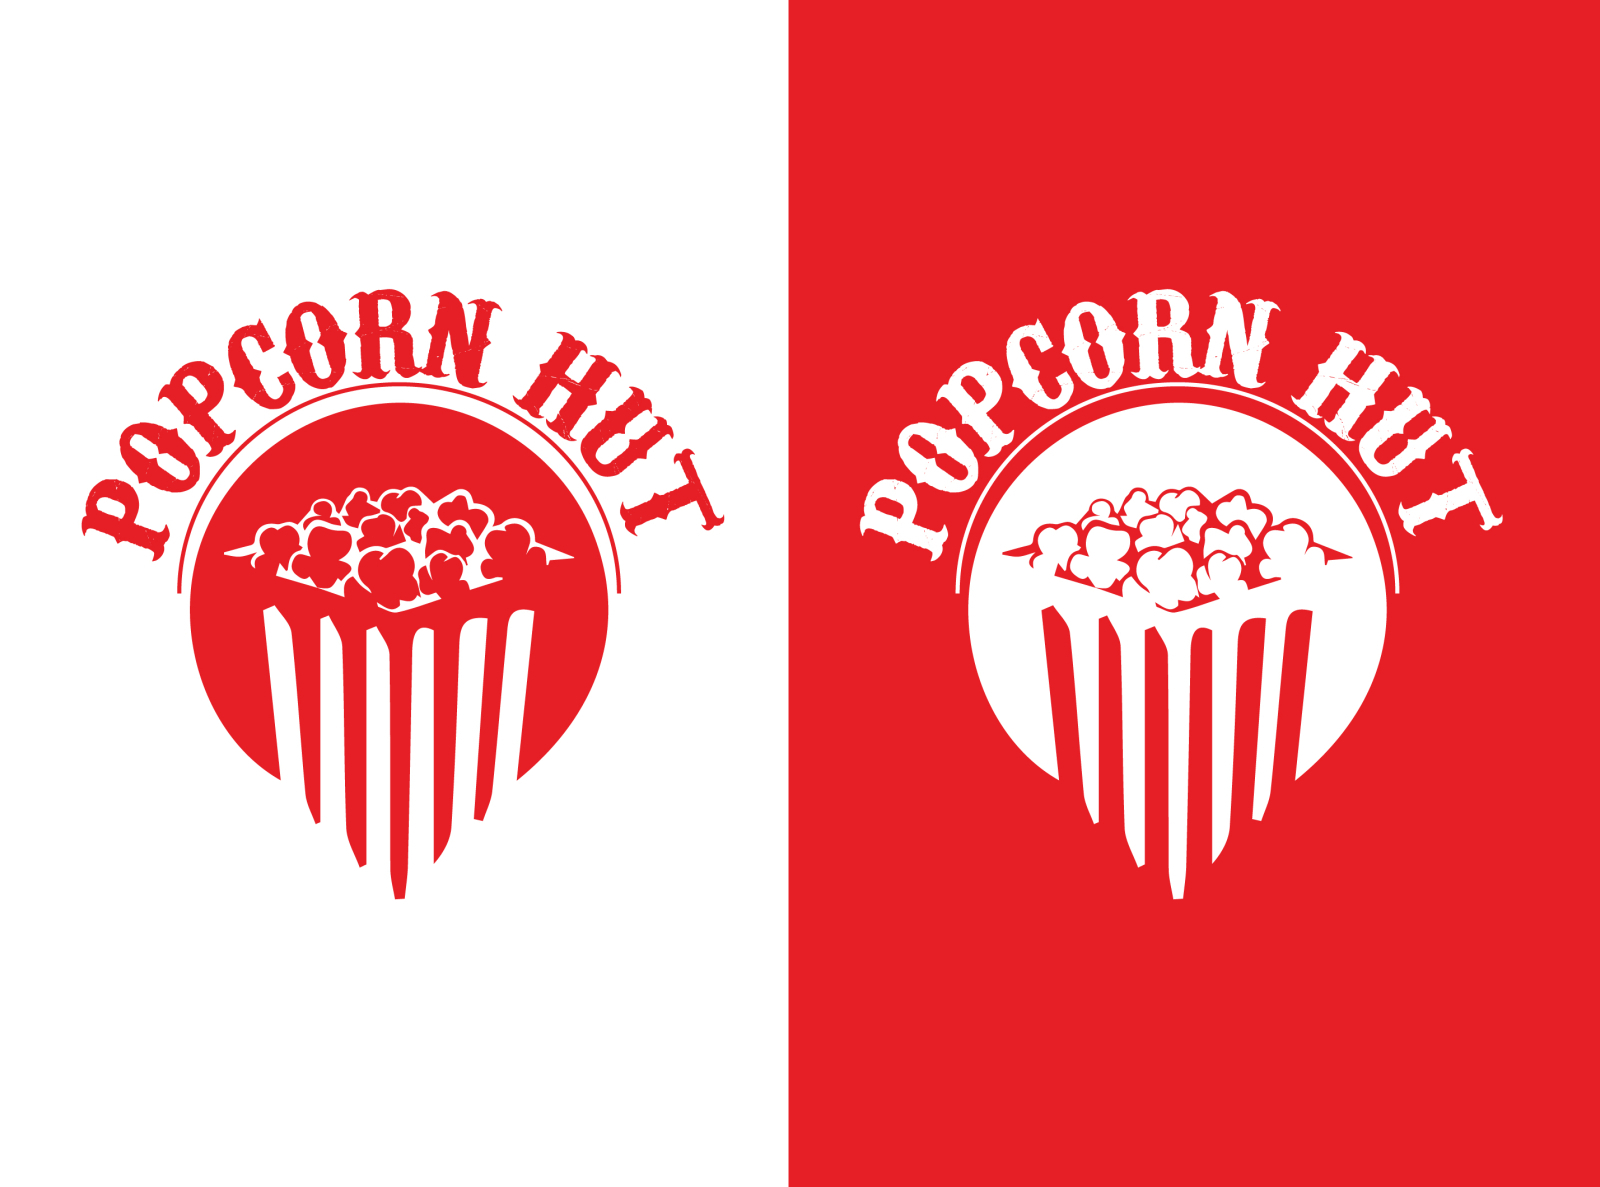 Popcorn Logo by Jinat Lubna on Dribbble